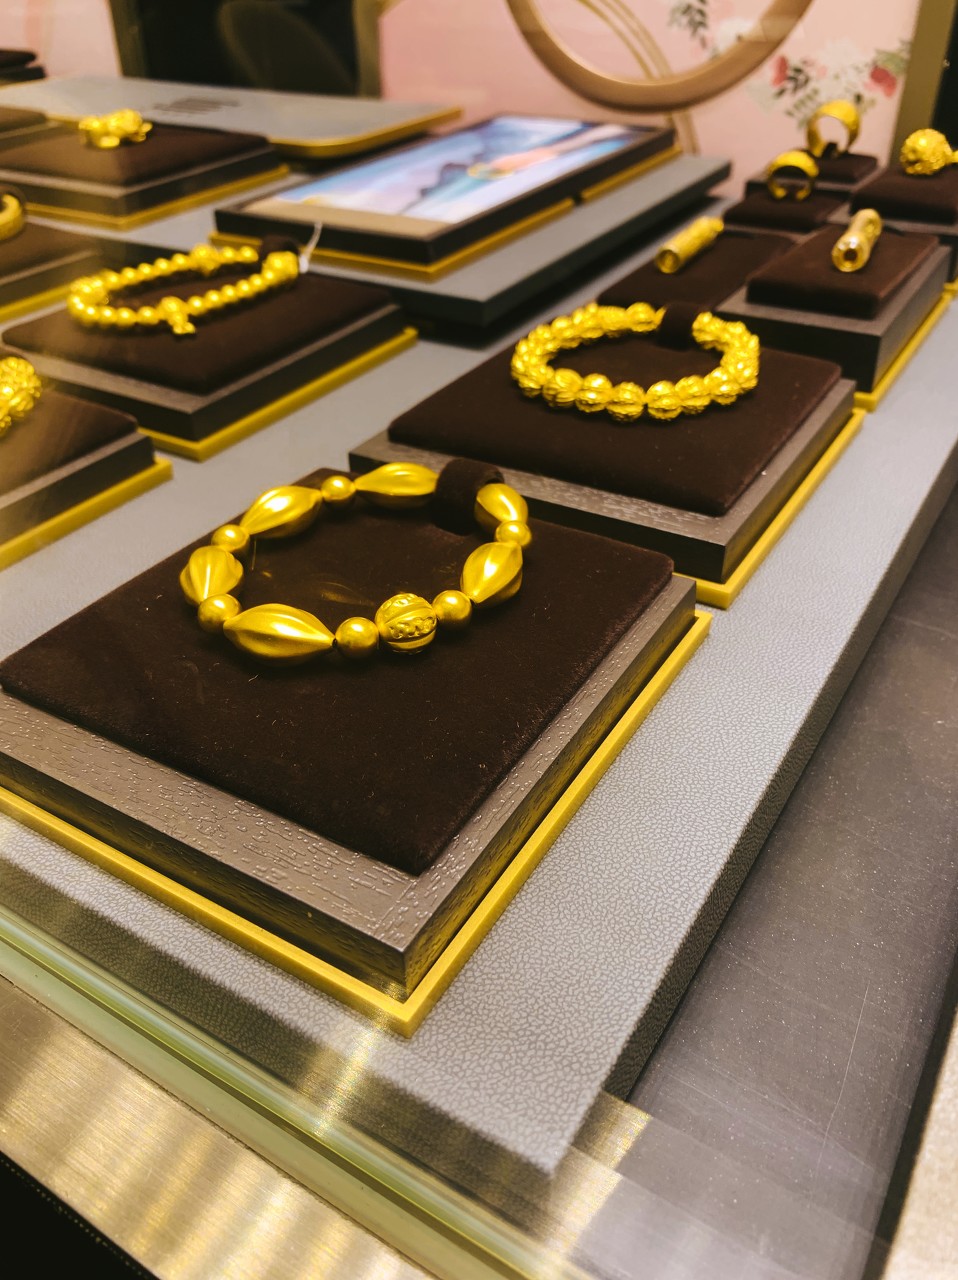 山西省消费者协会黄金珠宝行业消费教育基地正式成立